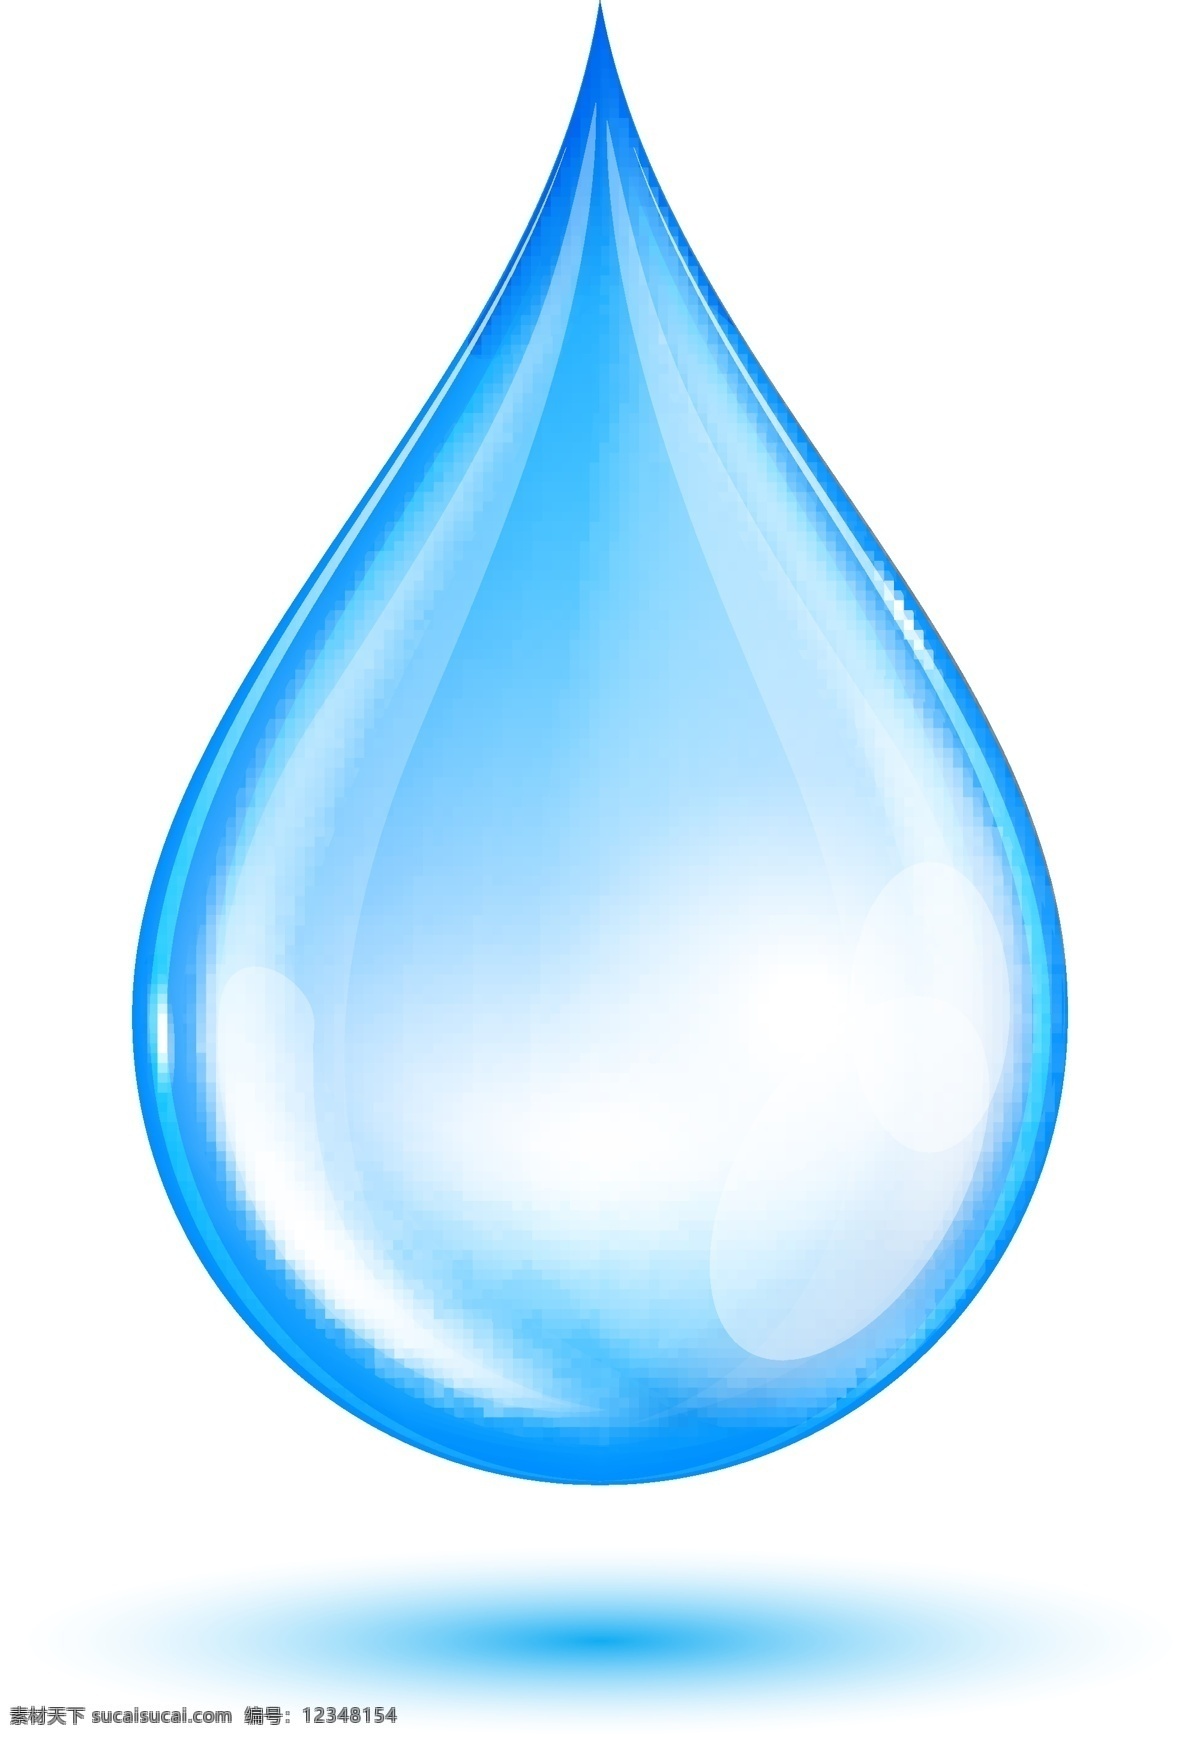 蓝色水滴 水 水滴 蓝色 背景 节约用水 广告 公益广告 水滴效果 生活百科 矢量素材 白色